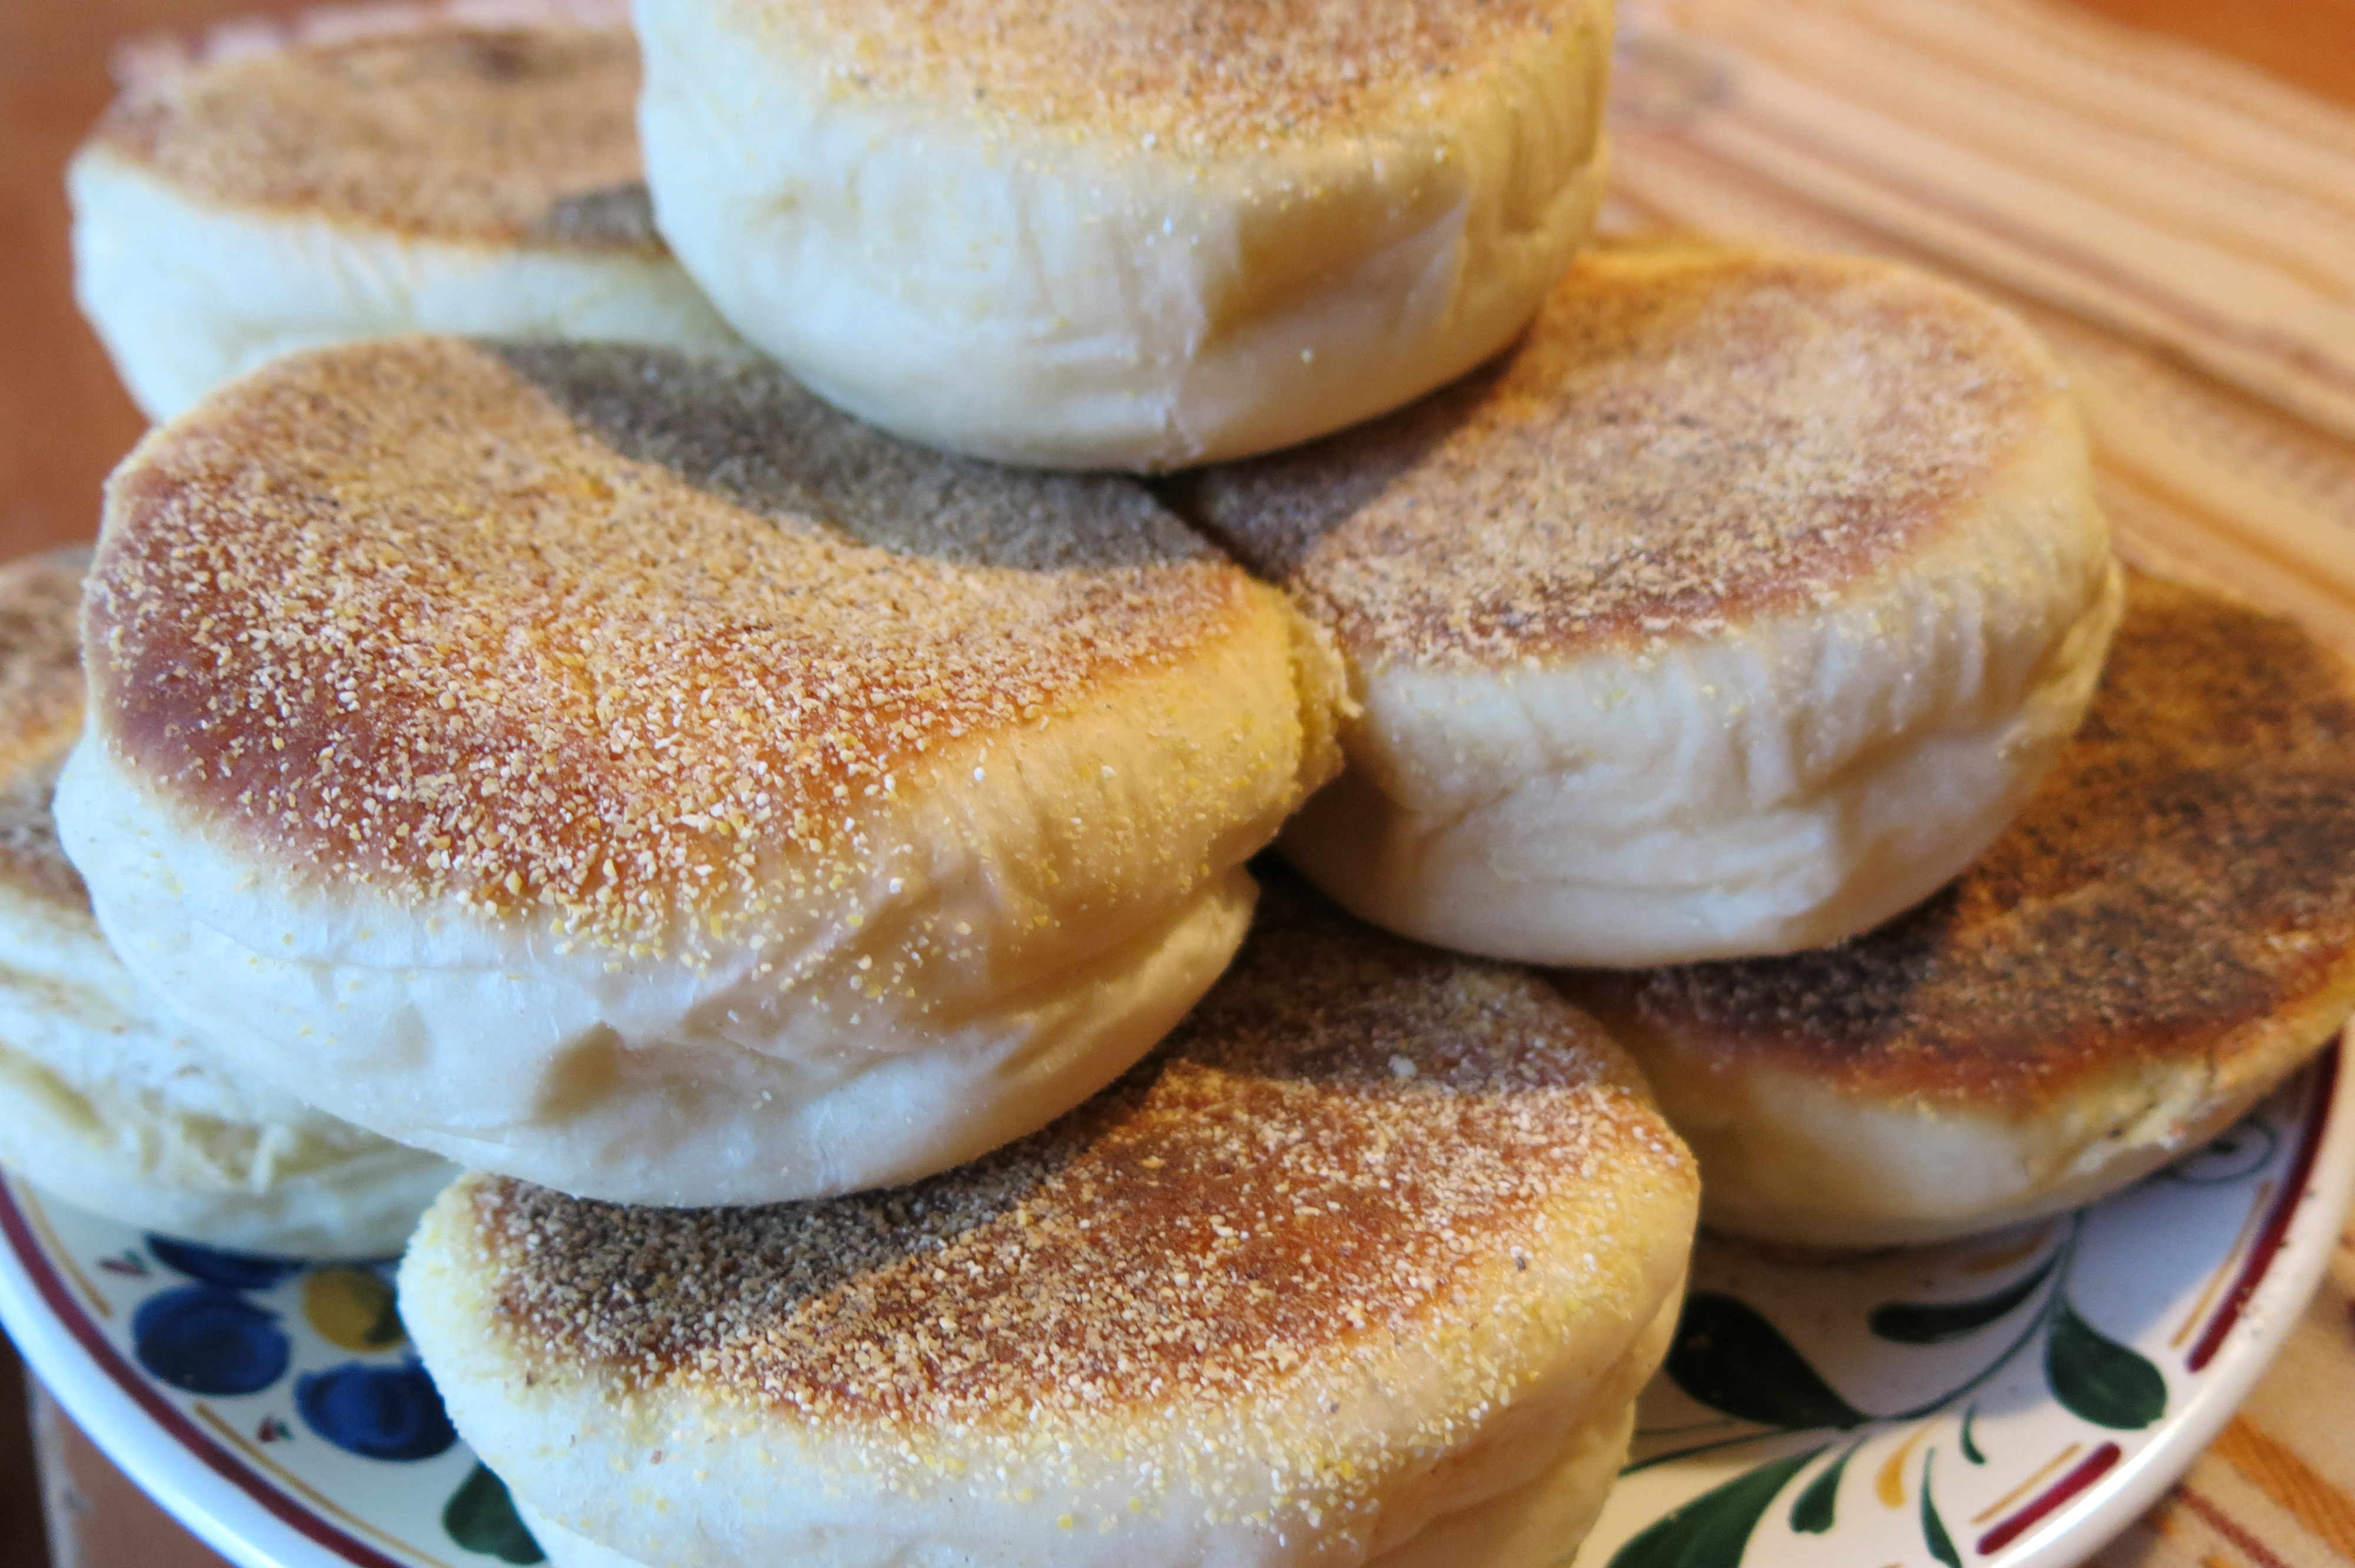 Homemade English muffins